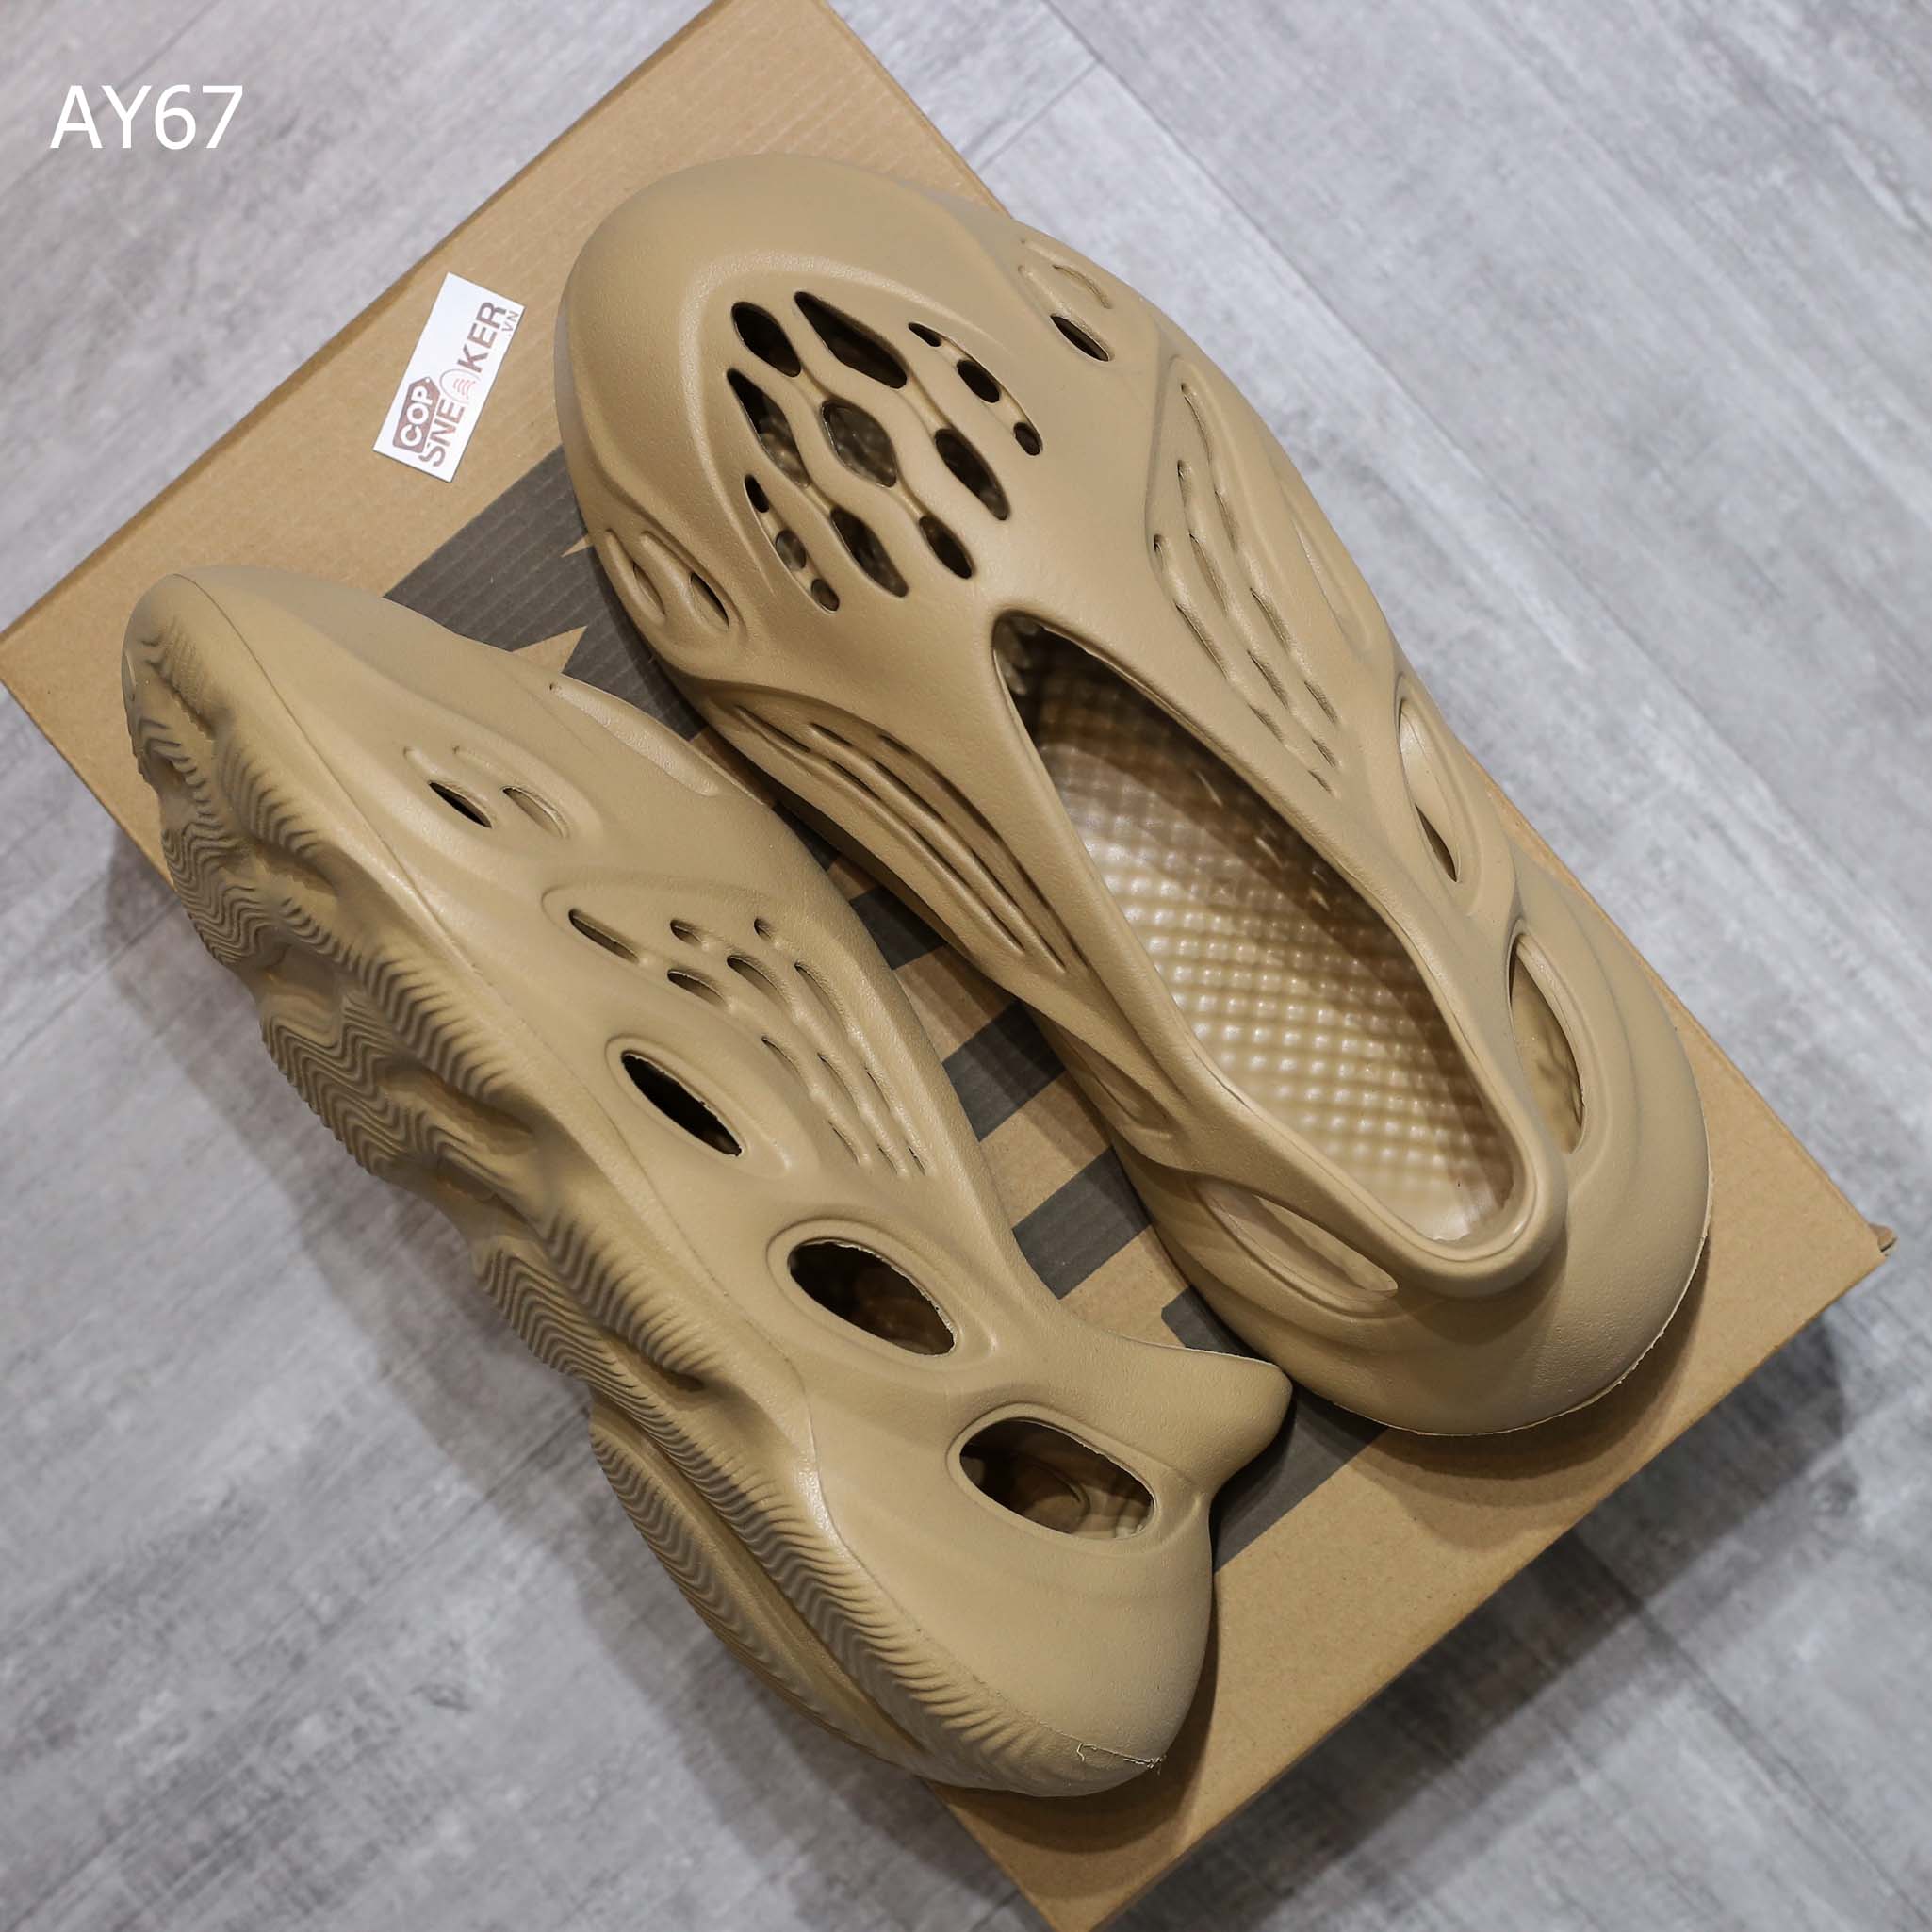 Giày Adidas Yeezy Foam Runner màu nâu ‘Ochre’ rep 1:1